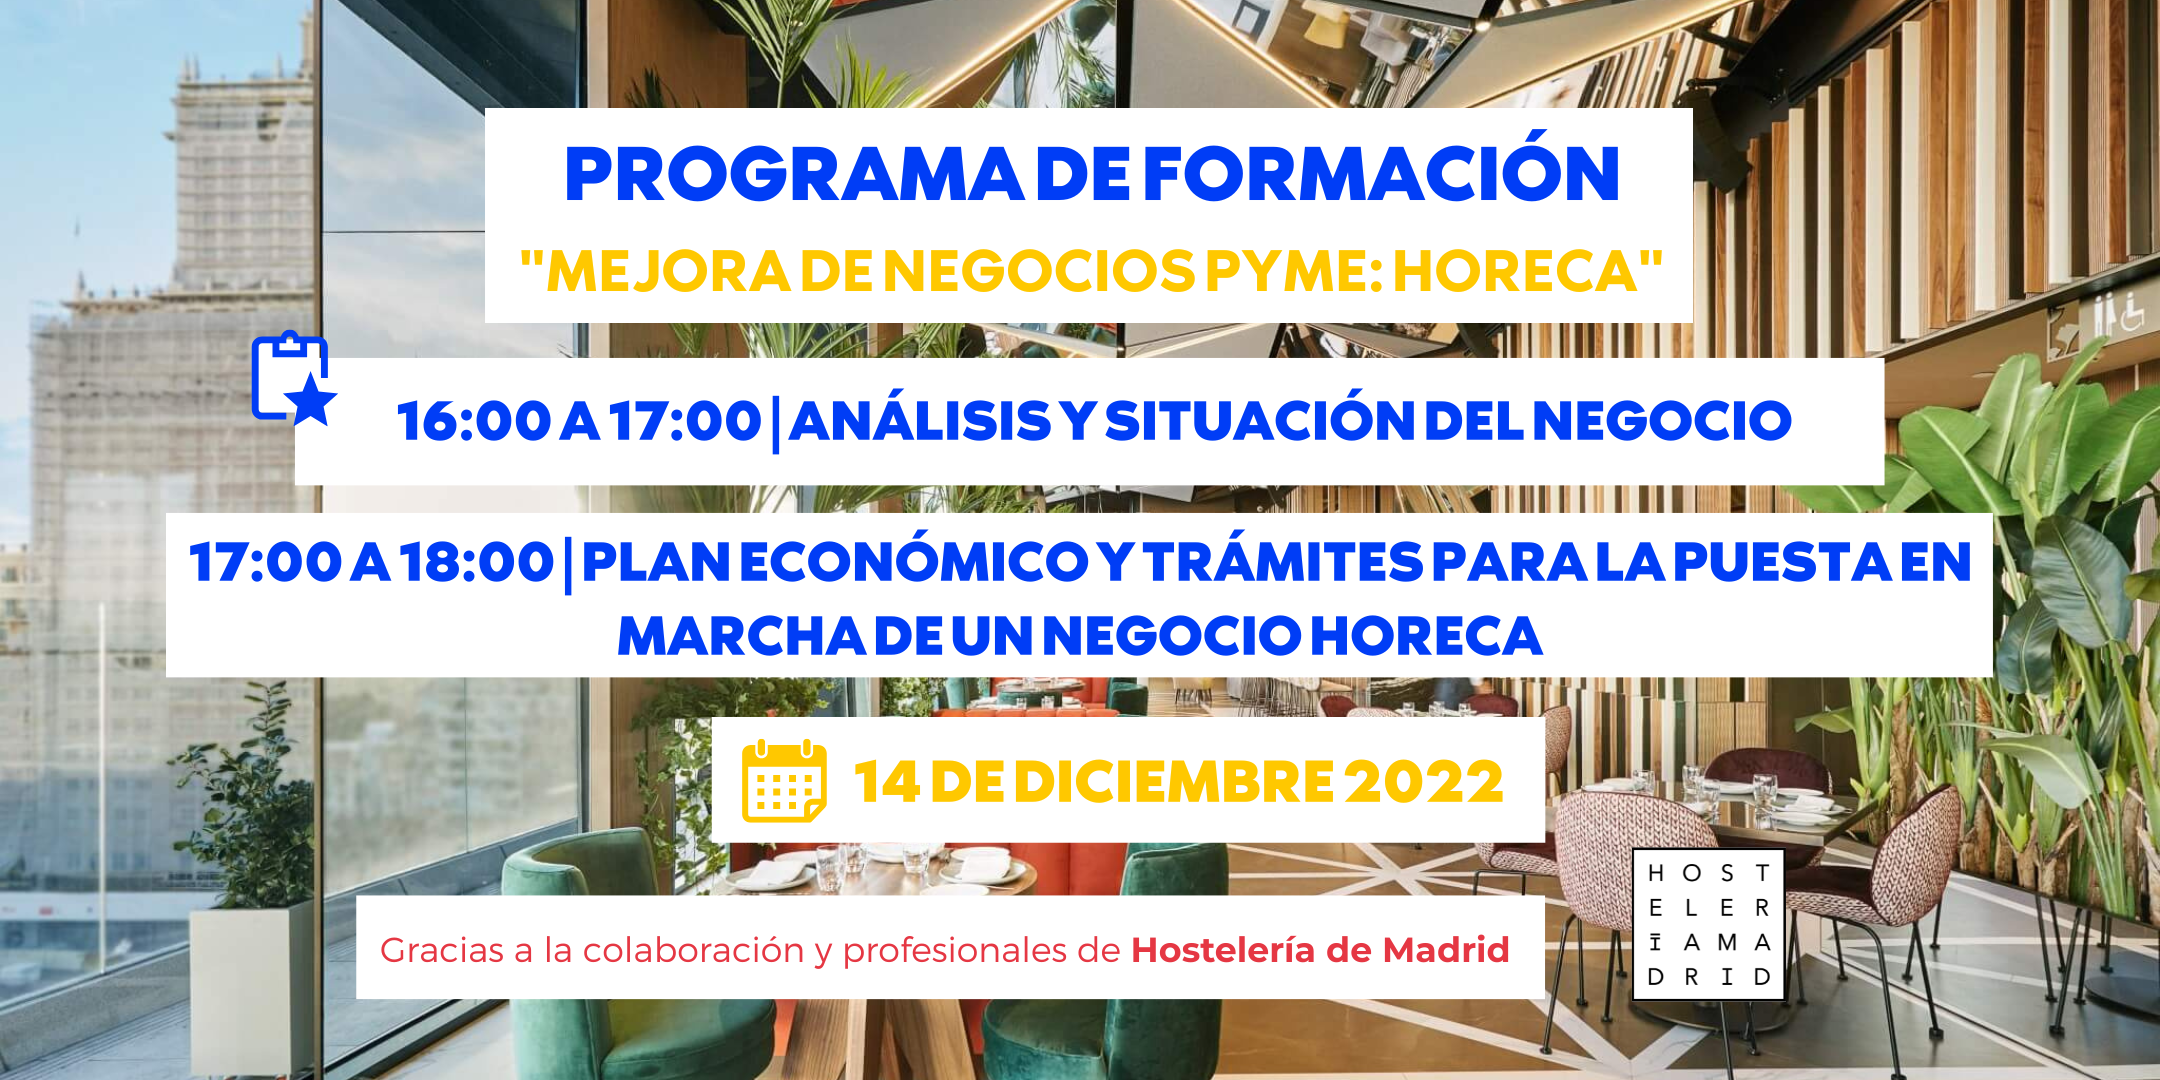 Apúntate al programa de formación de Hostelería Madrid y el Madrid Food Innovation Hub - La Viña